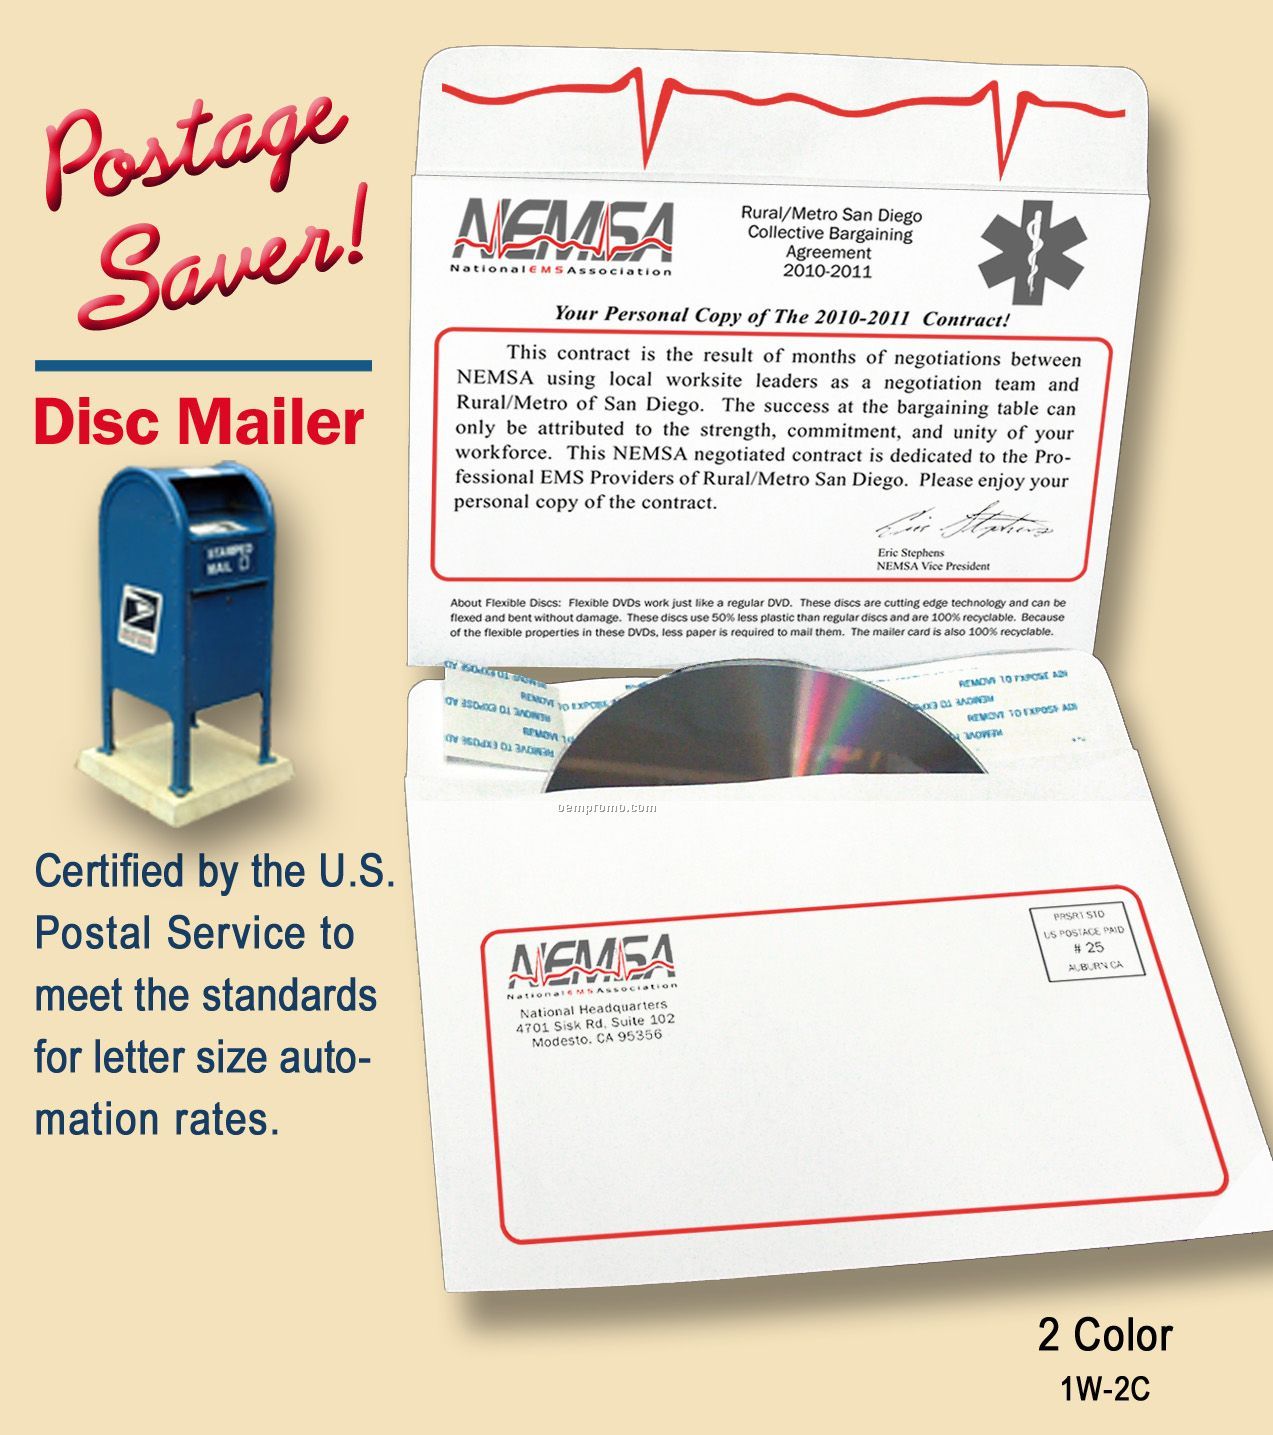 Postage Saver Disc Mailer,2 Color Imprint